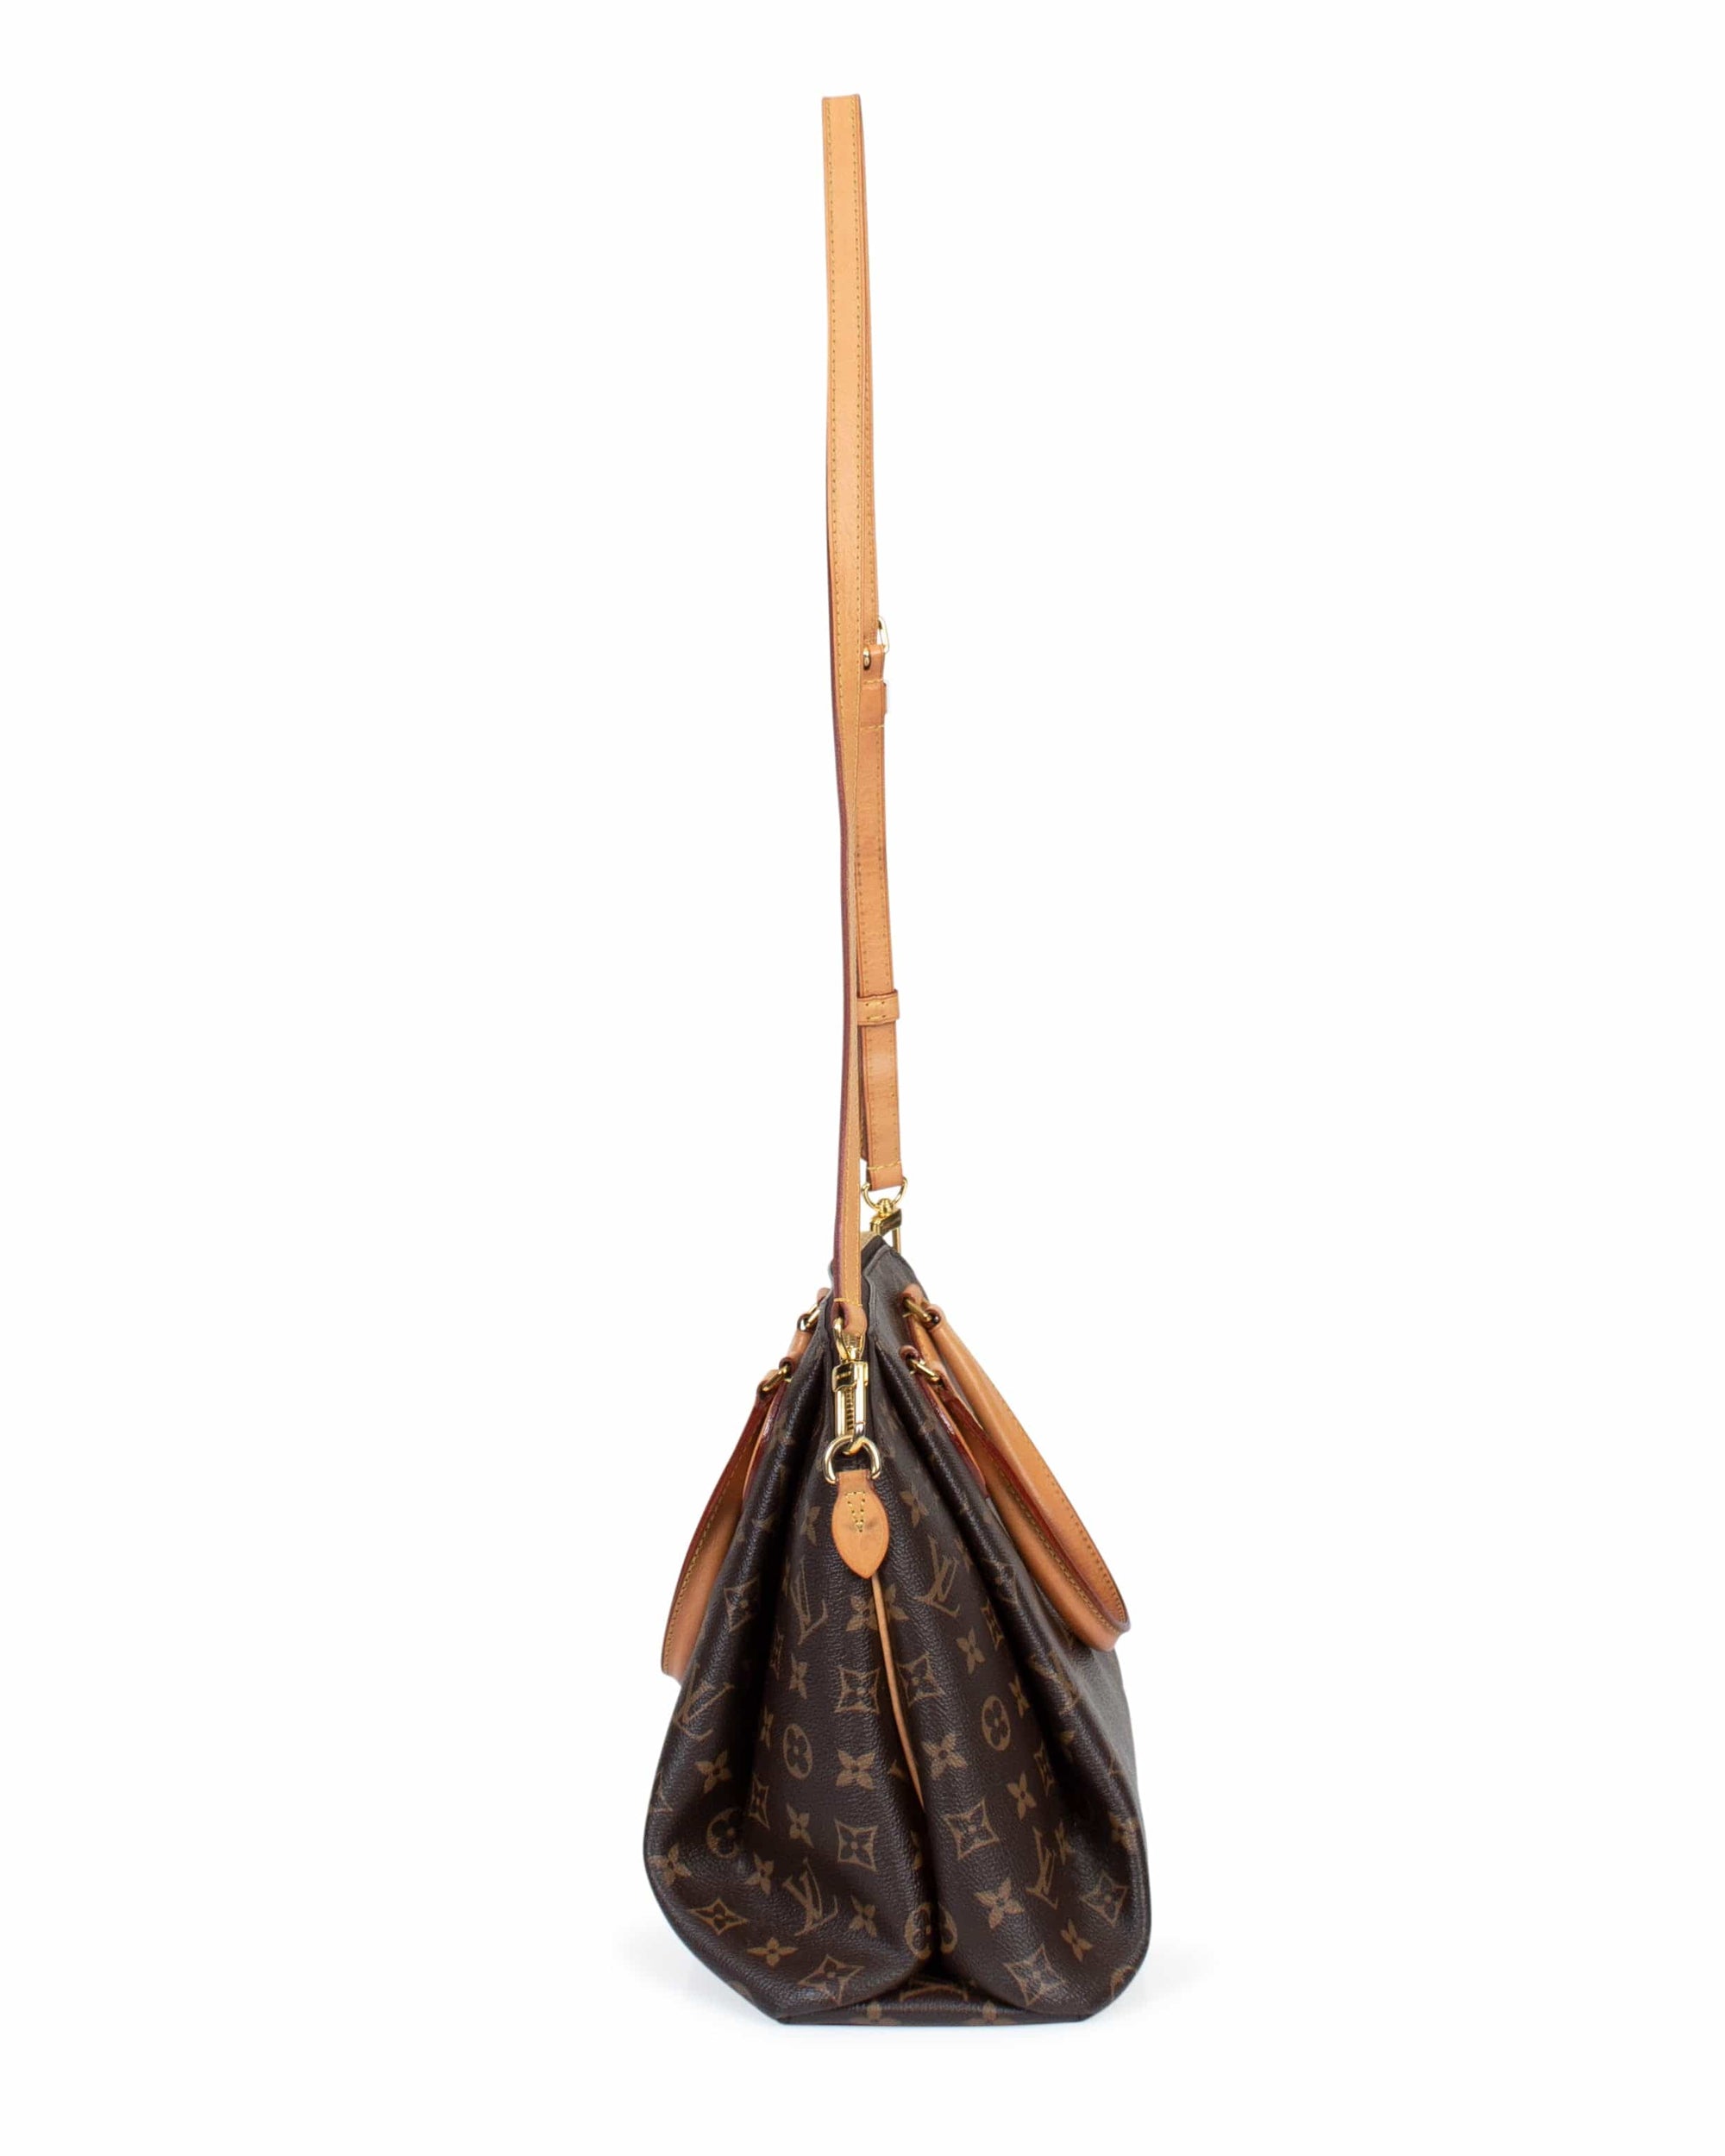 Louis Vuitton Rivoli PM Monogram Canvas Top Handle Bag on SALE